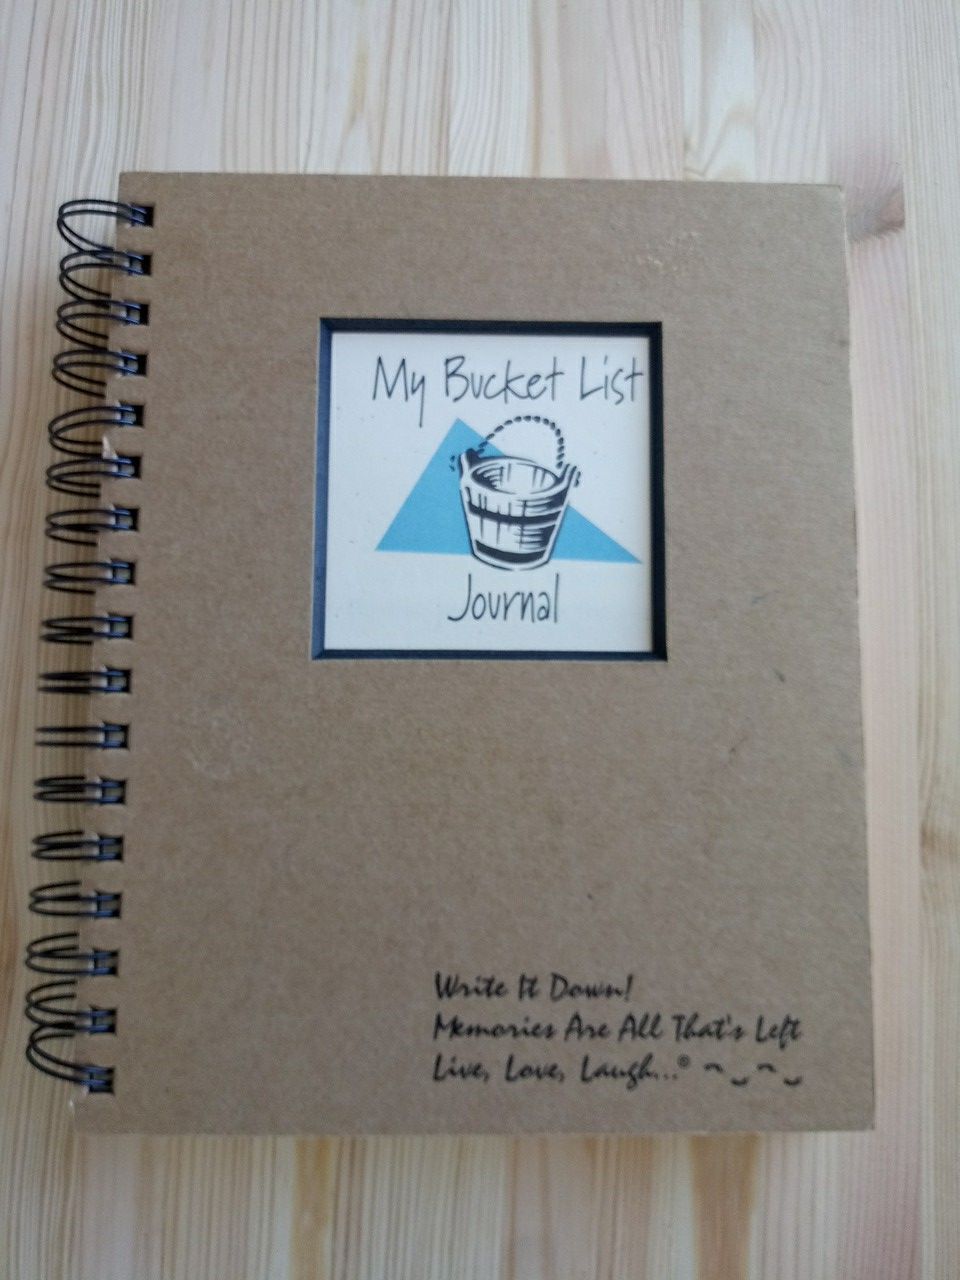 My Bucket List Journal